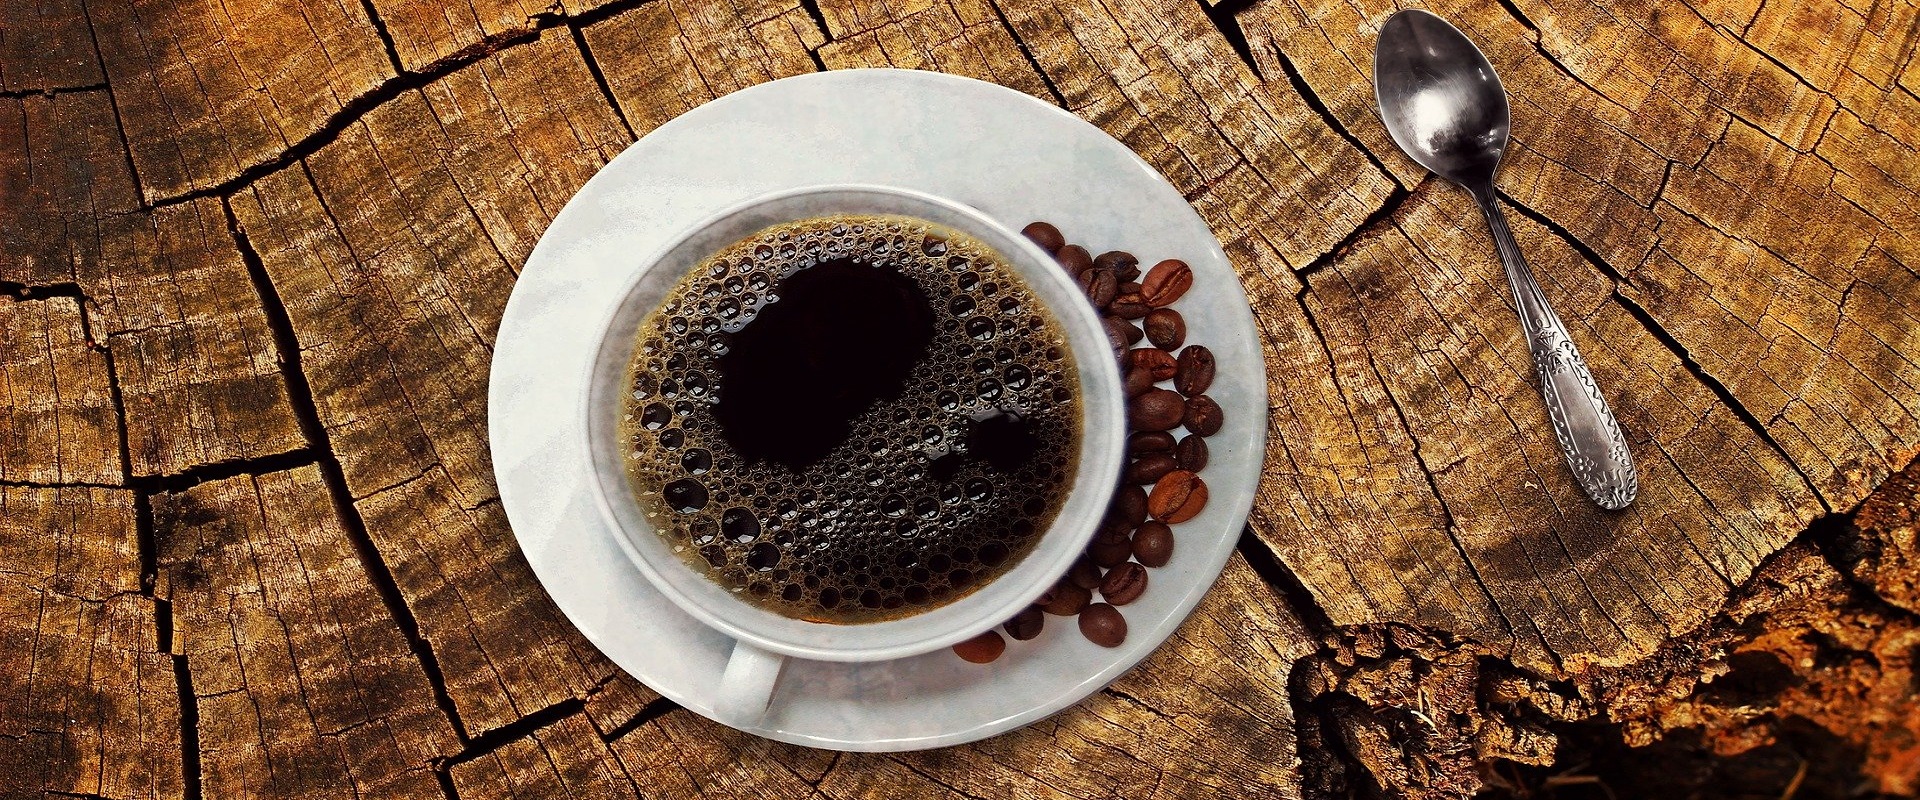 Café Colombiano – Colombian coffe